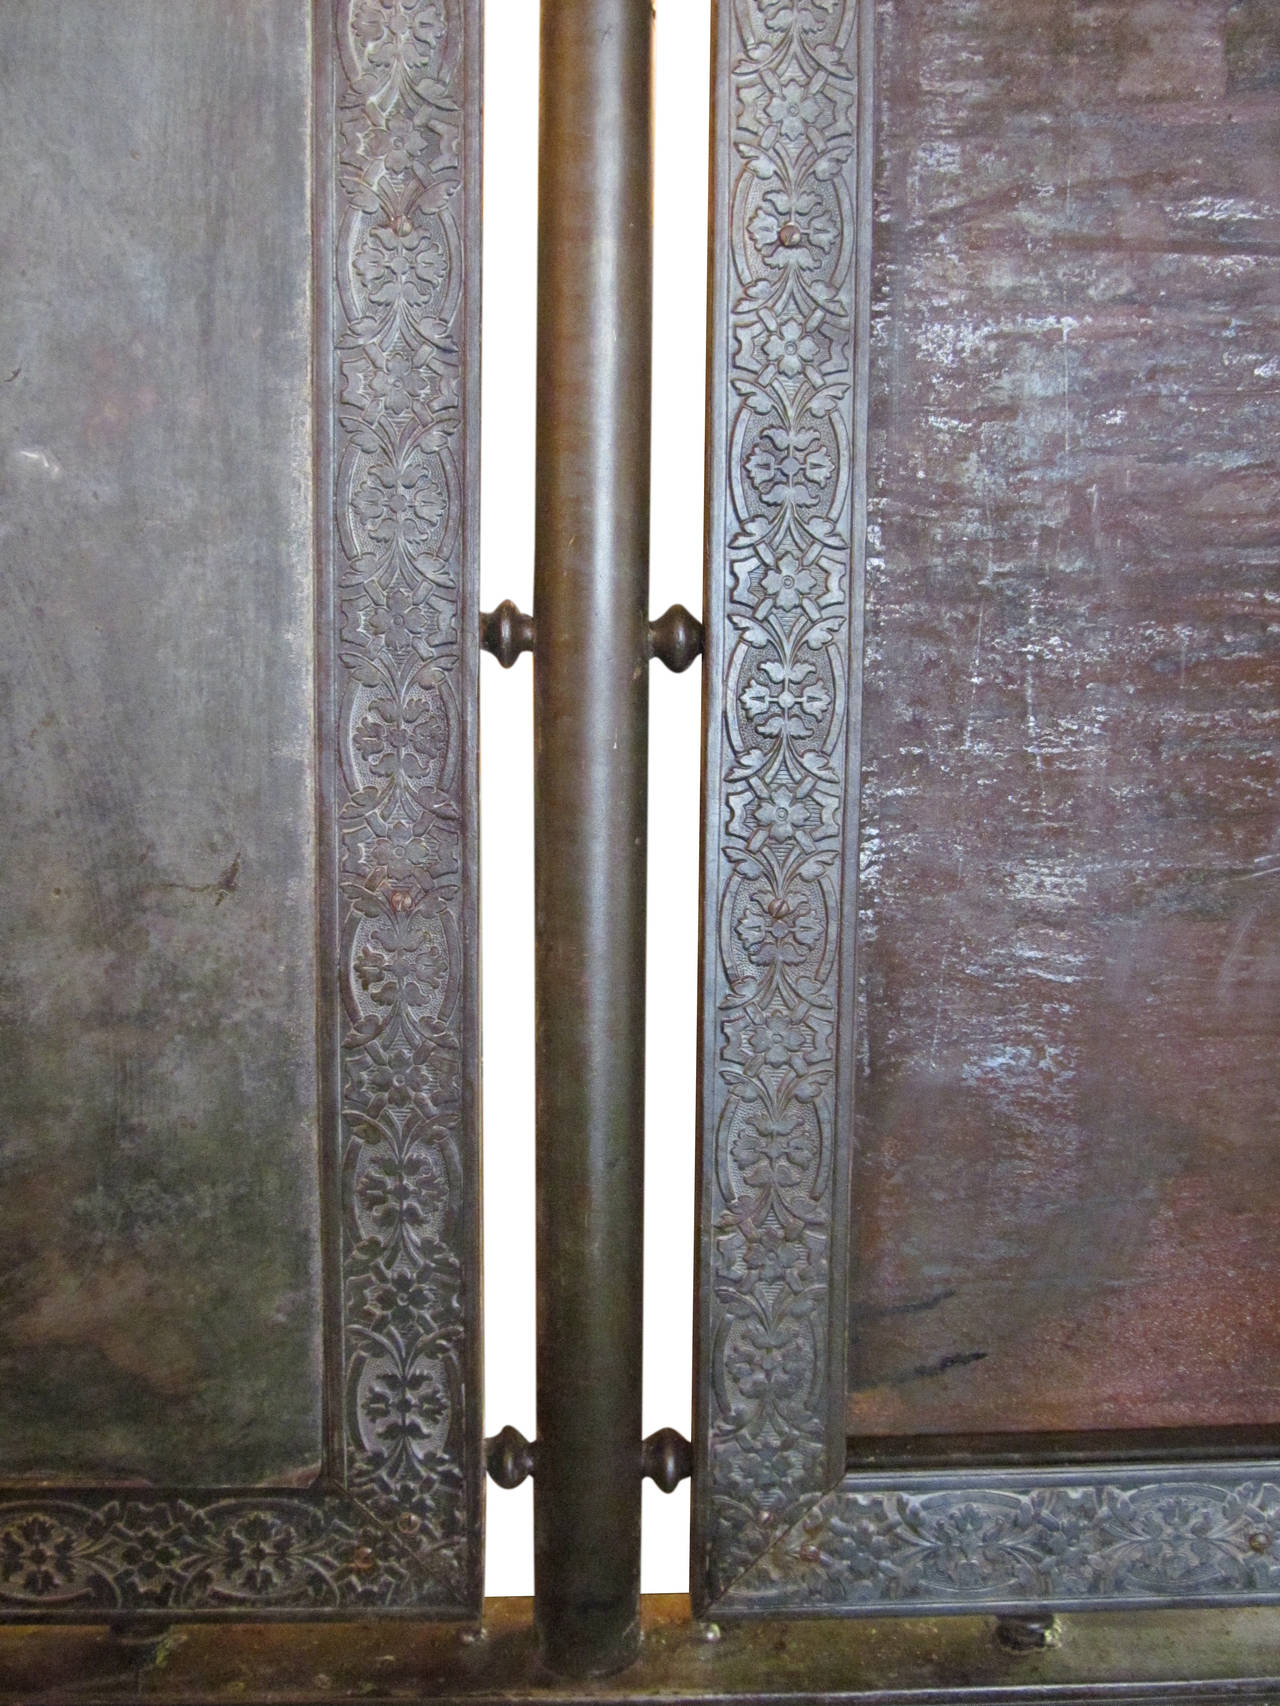 Mid-20th Century Antique Otis Birdcage Elevator with Original Hardware, Finials and Scissor Doors